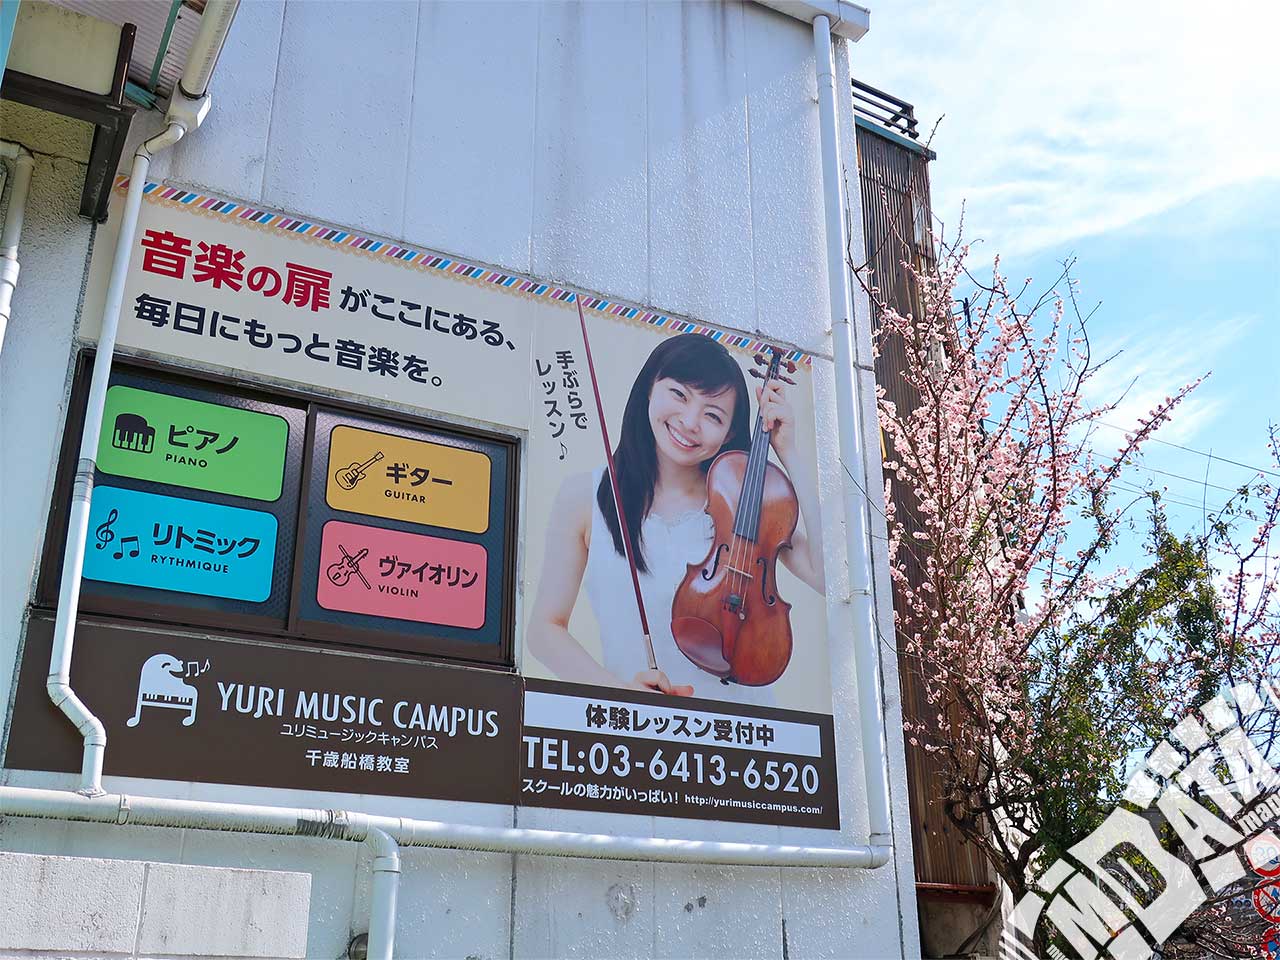 ユリミュージックキャンパス千歳船橋教室の写真 撮影日:2018/3/4 Photo taken on 2018/03/04